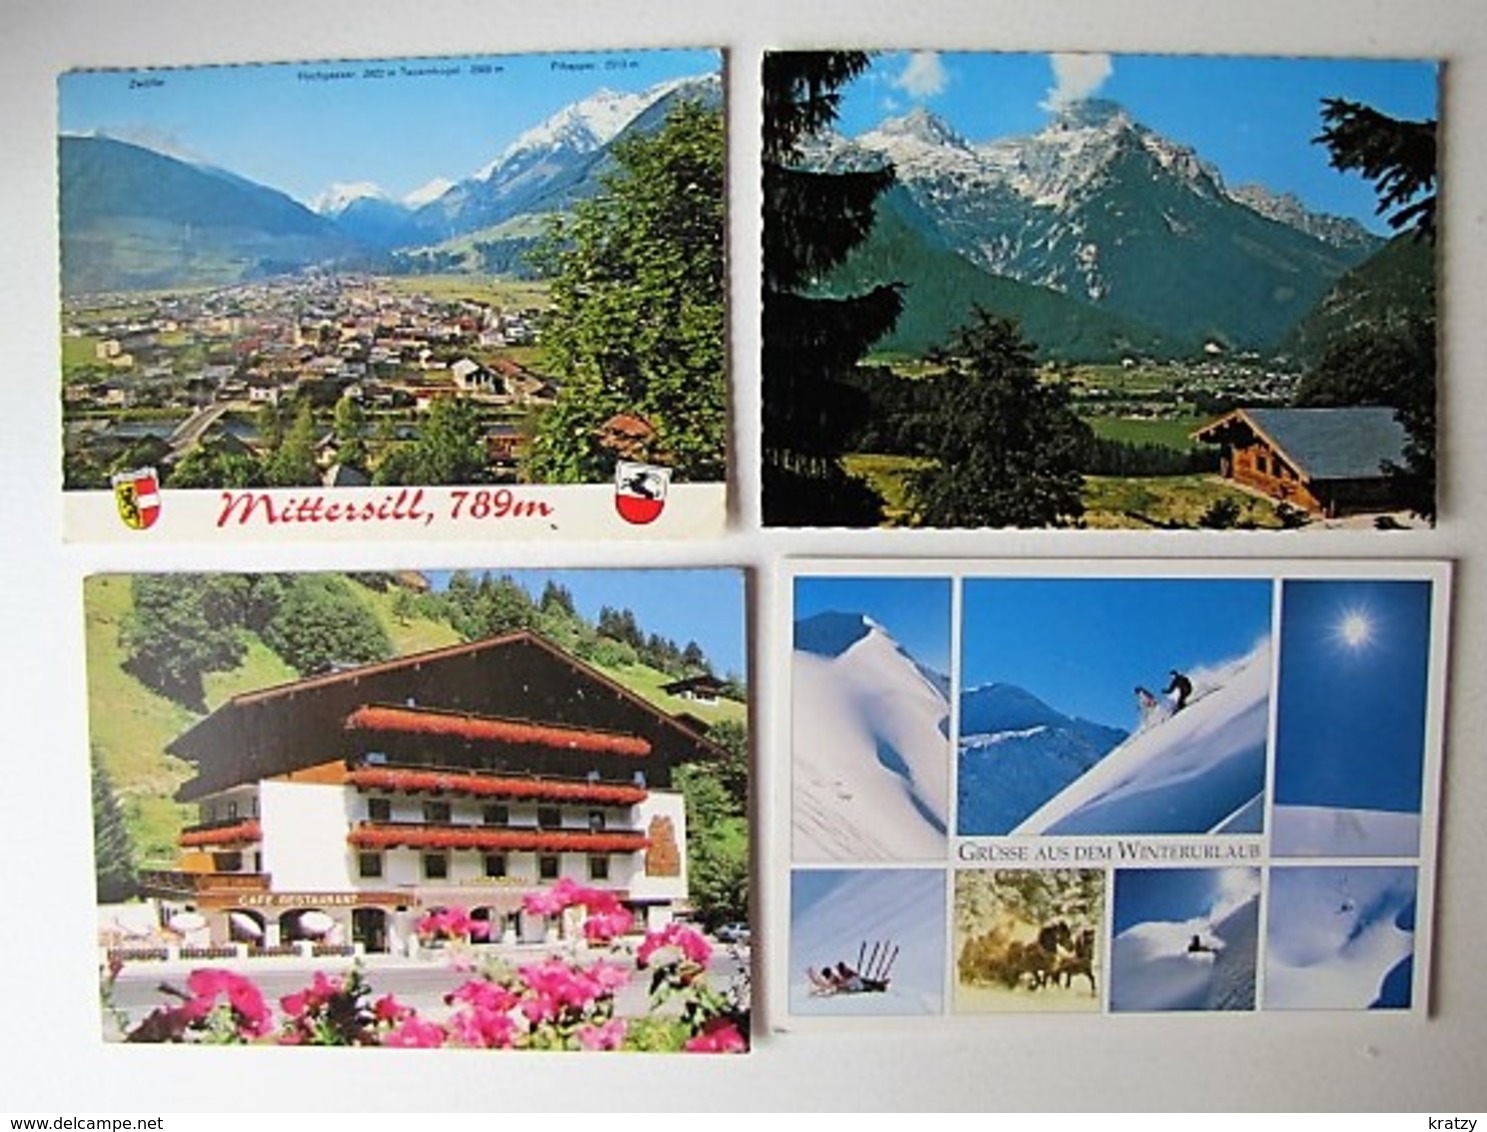 ÖSTERREICH - AUTRICHE - Lot 52 - 100 cartes postales différentes